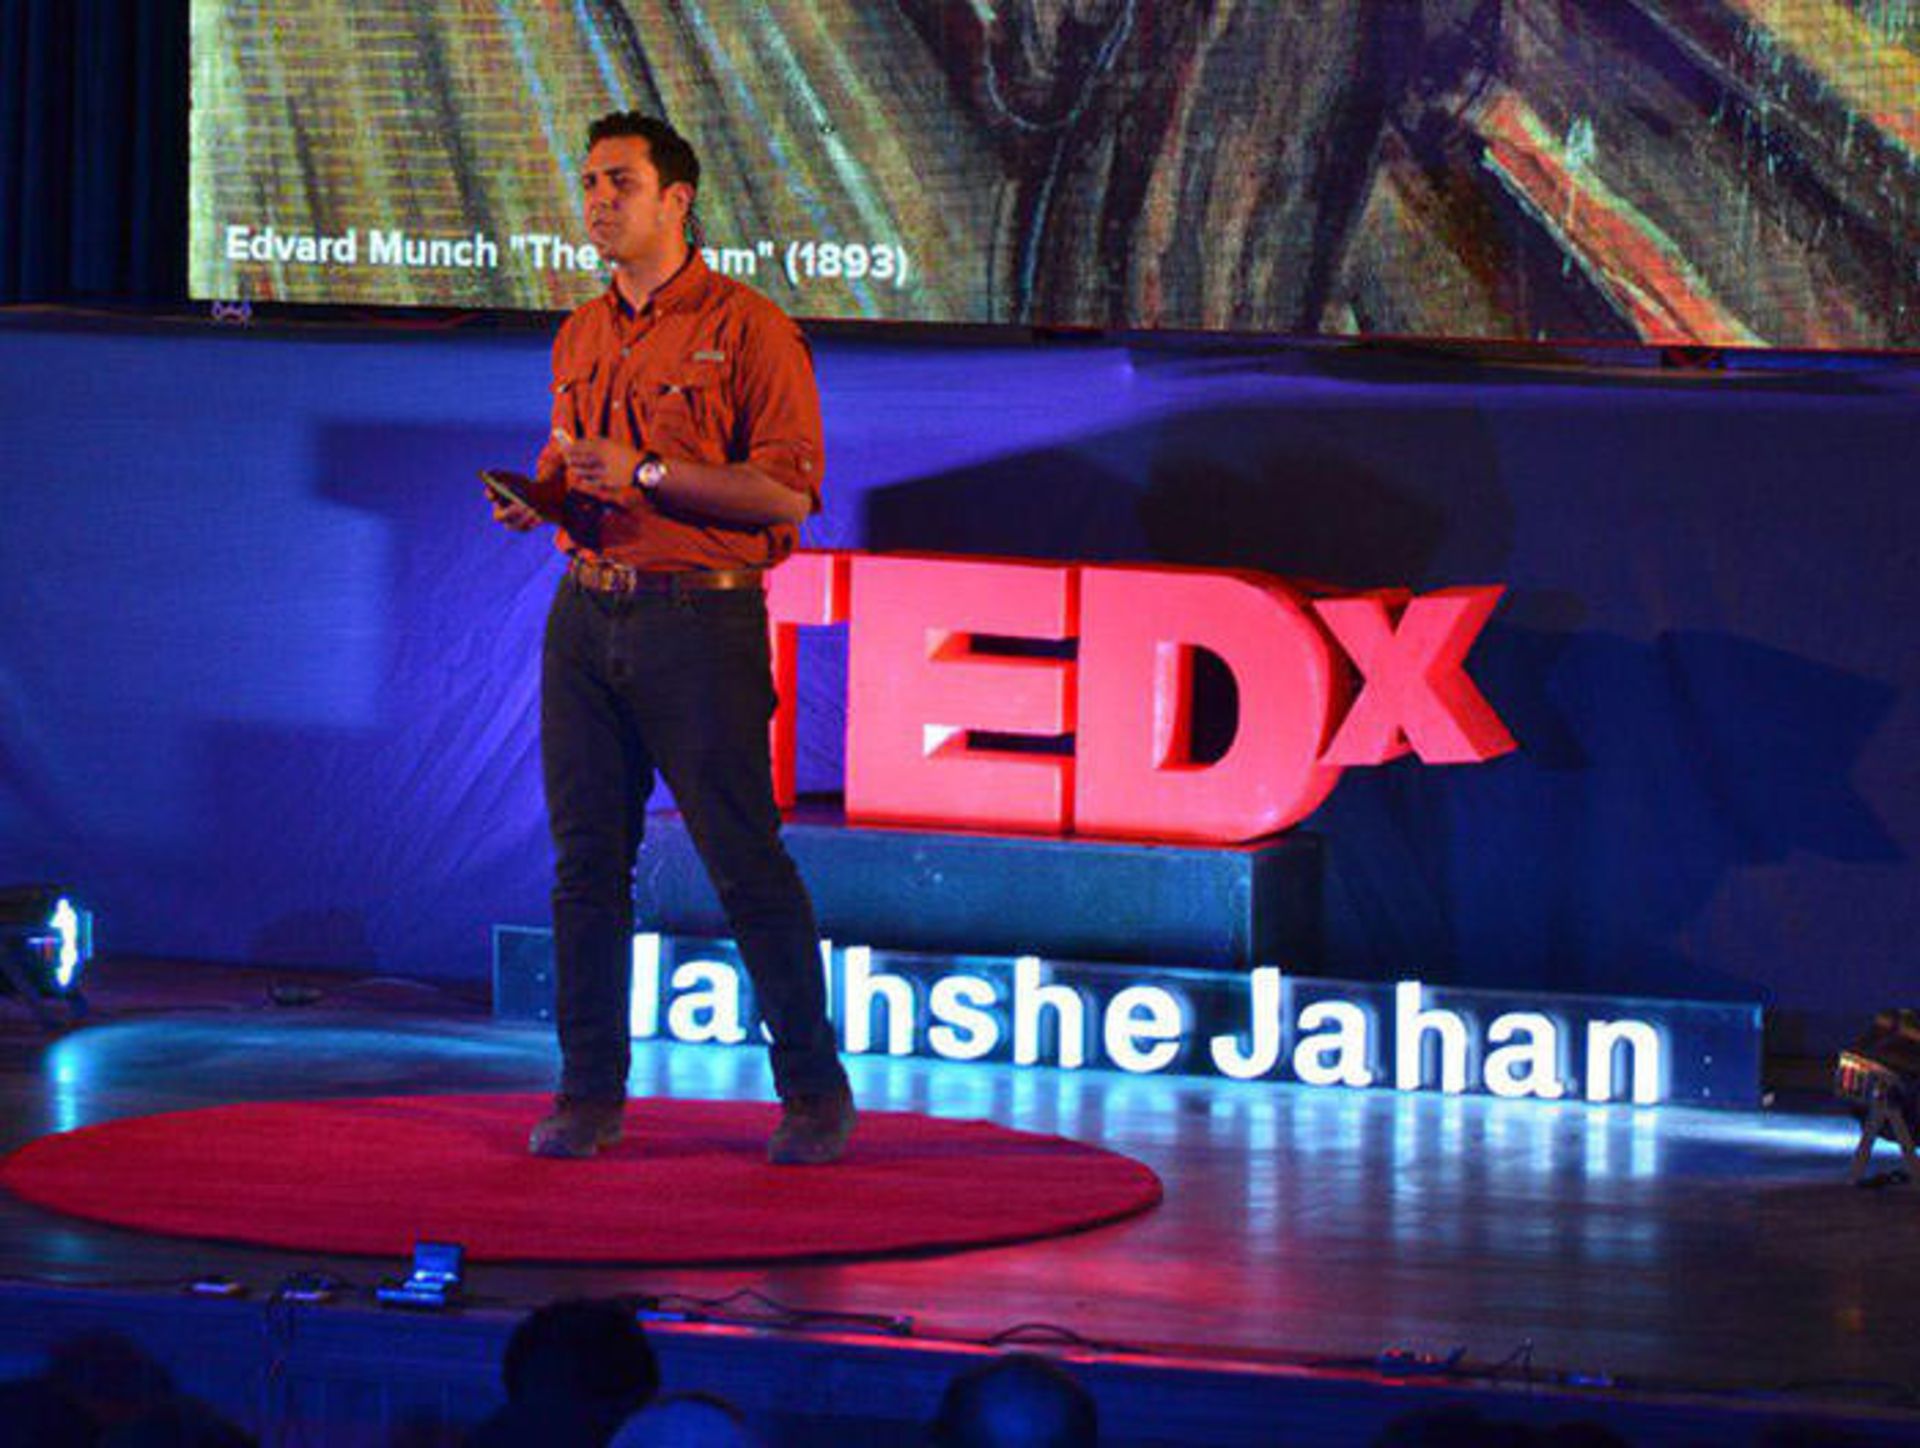 تدکس نقش جهان / Tedx